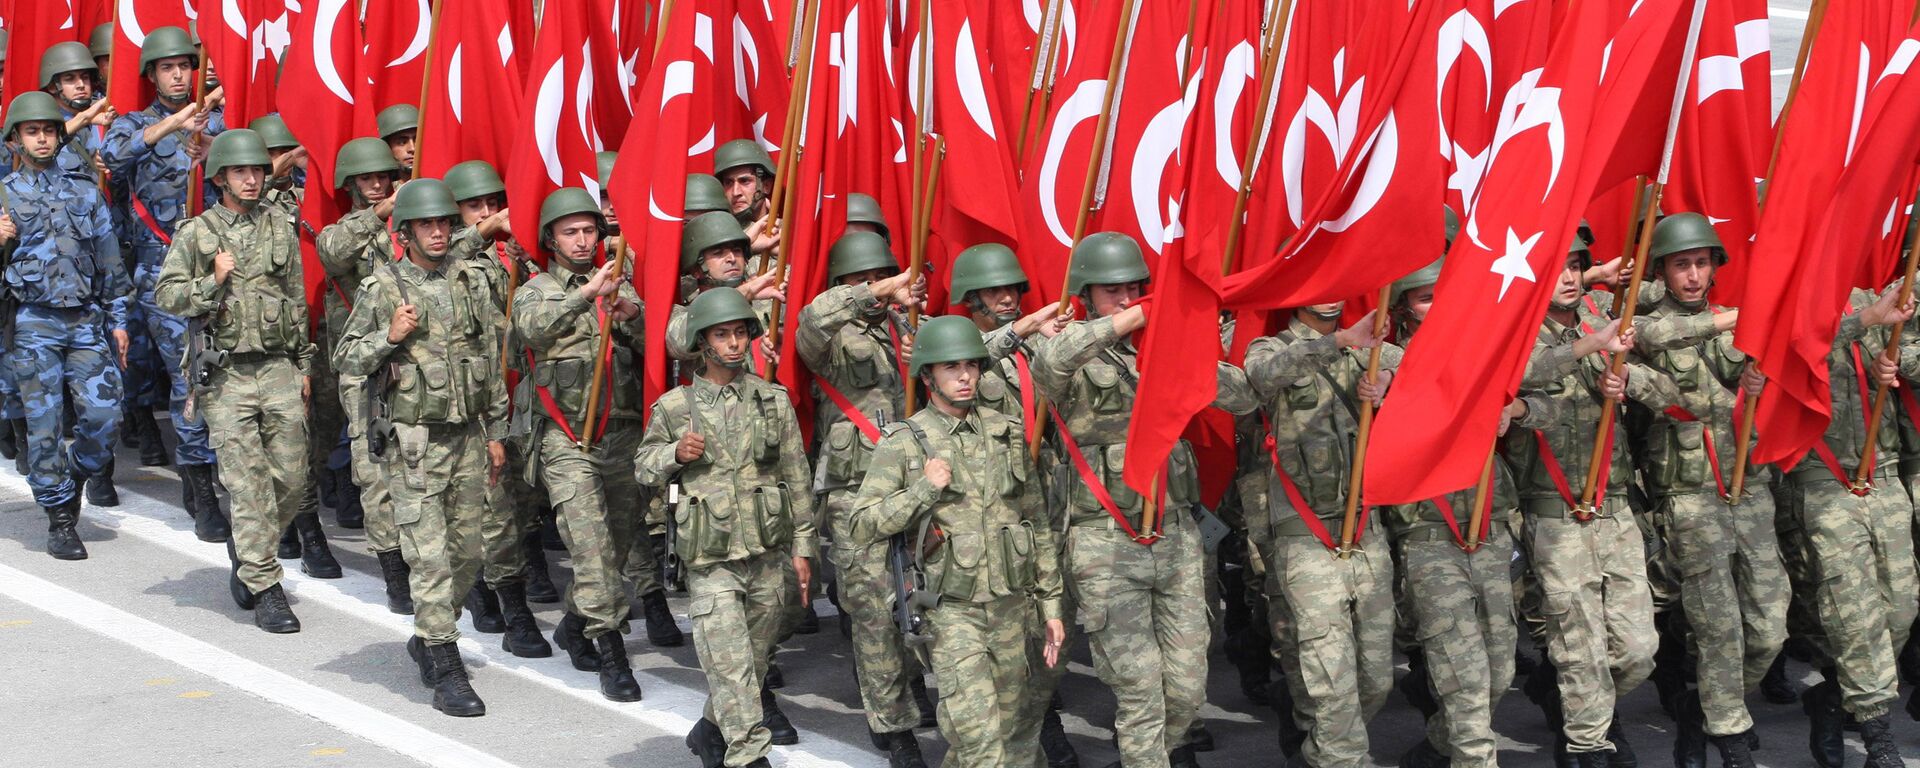 Turski vojnici sa zastavama na paradi 30. avgusta 2013. godine u Ankari tokom proslave 91. godišnjice Dana pobede - Sputnik Srbija, 1920, 15.03.2022